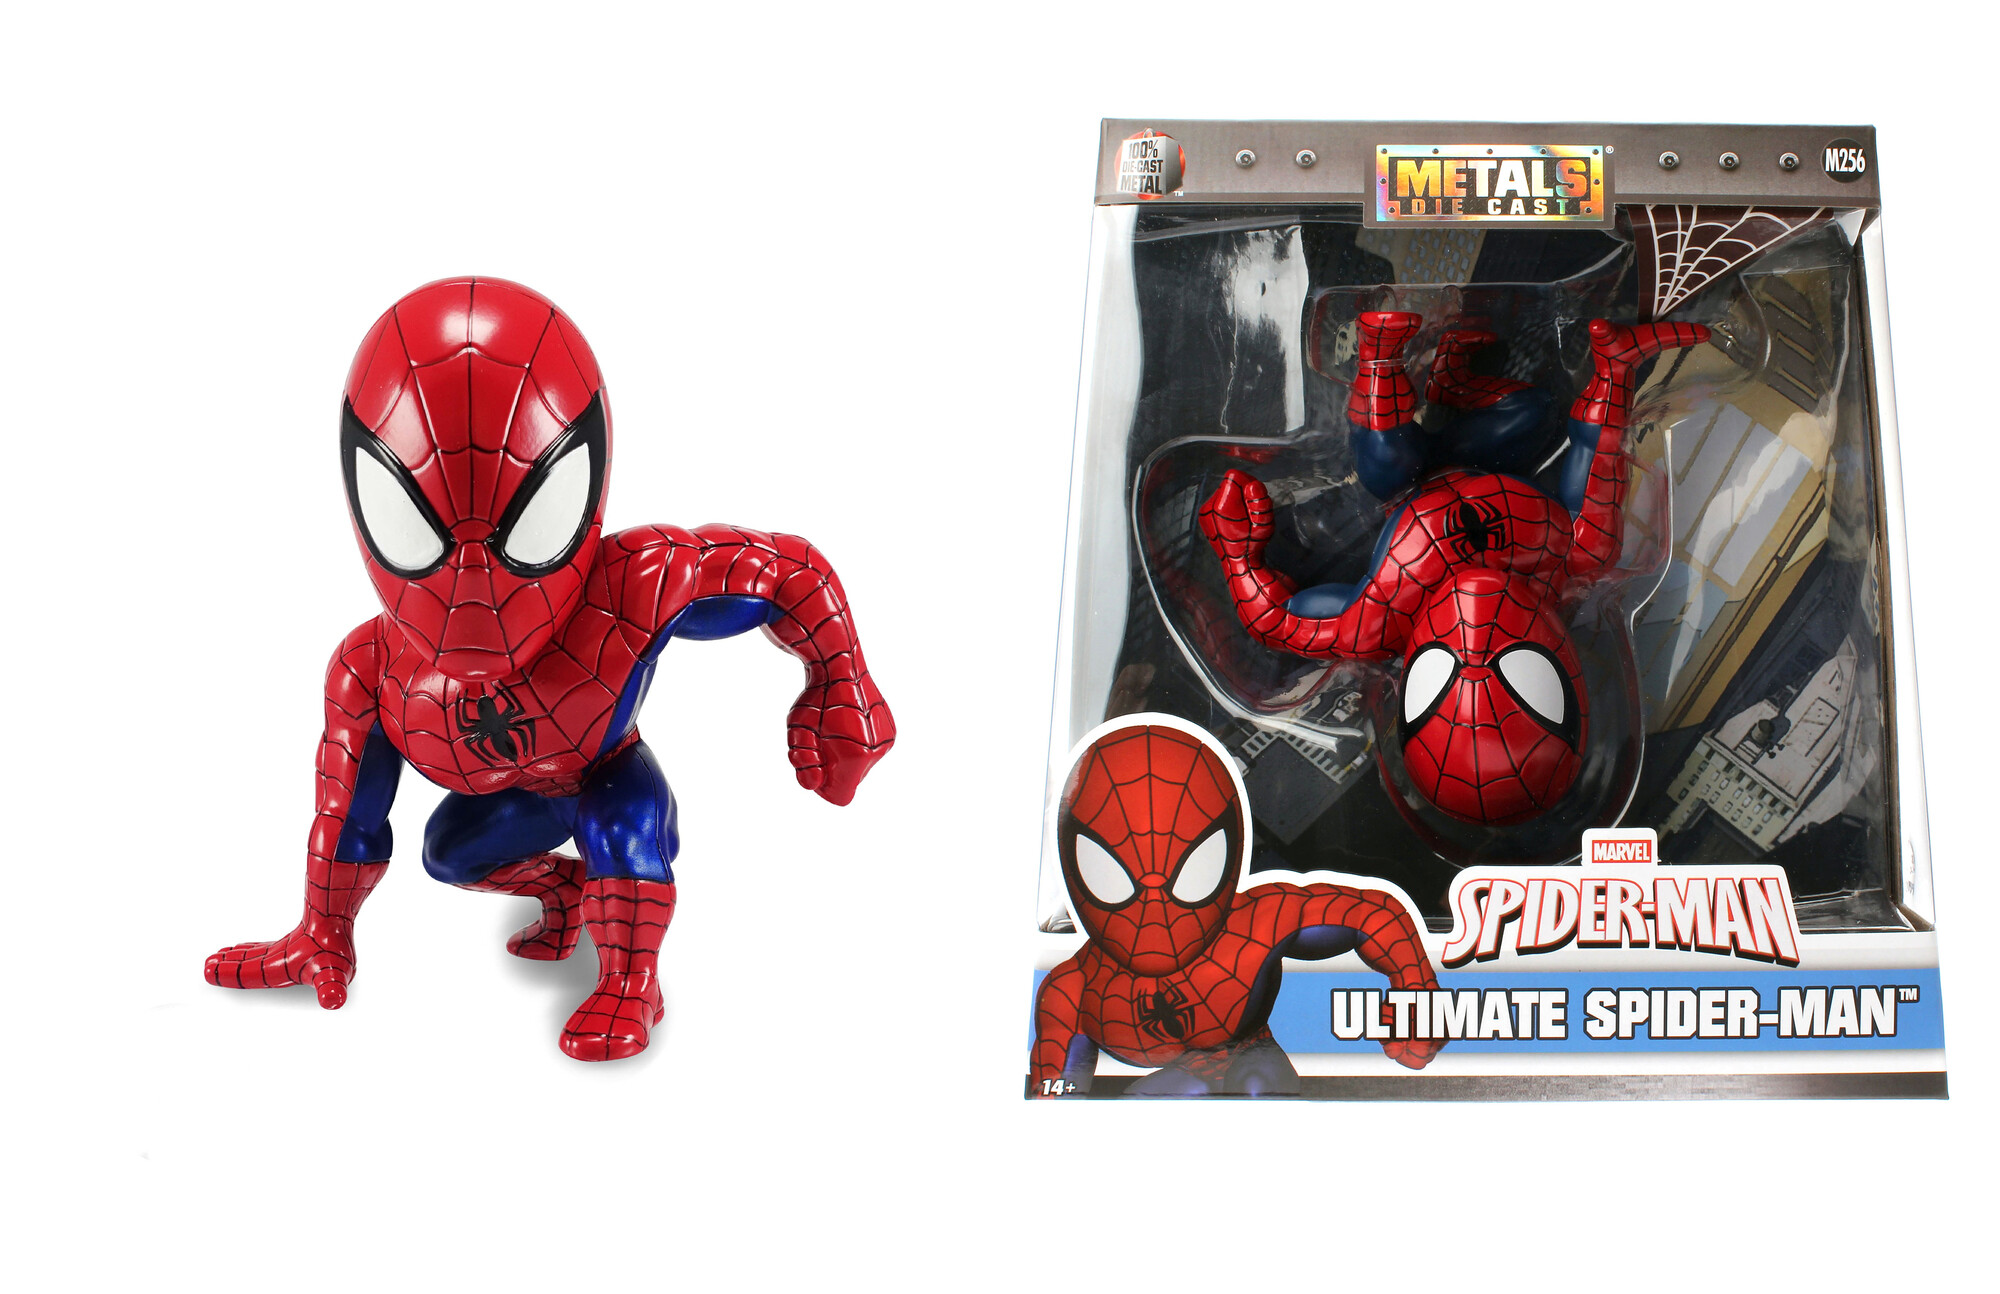 Jada toys- marvel spiderman in die- cast, 253223005, +8 anni, personaggio da collezione, 15 cm - 